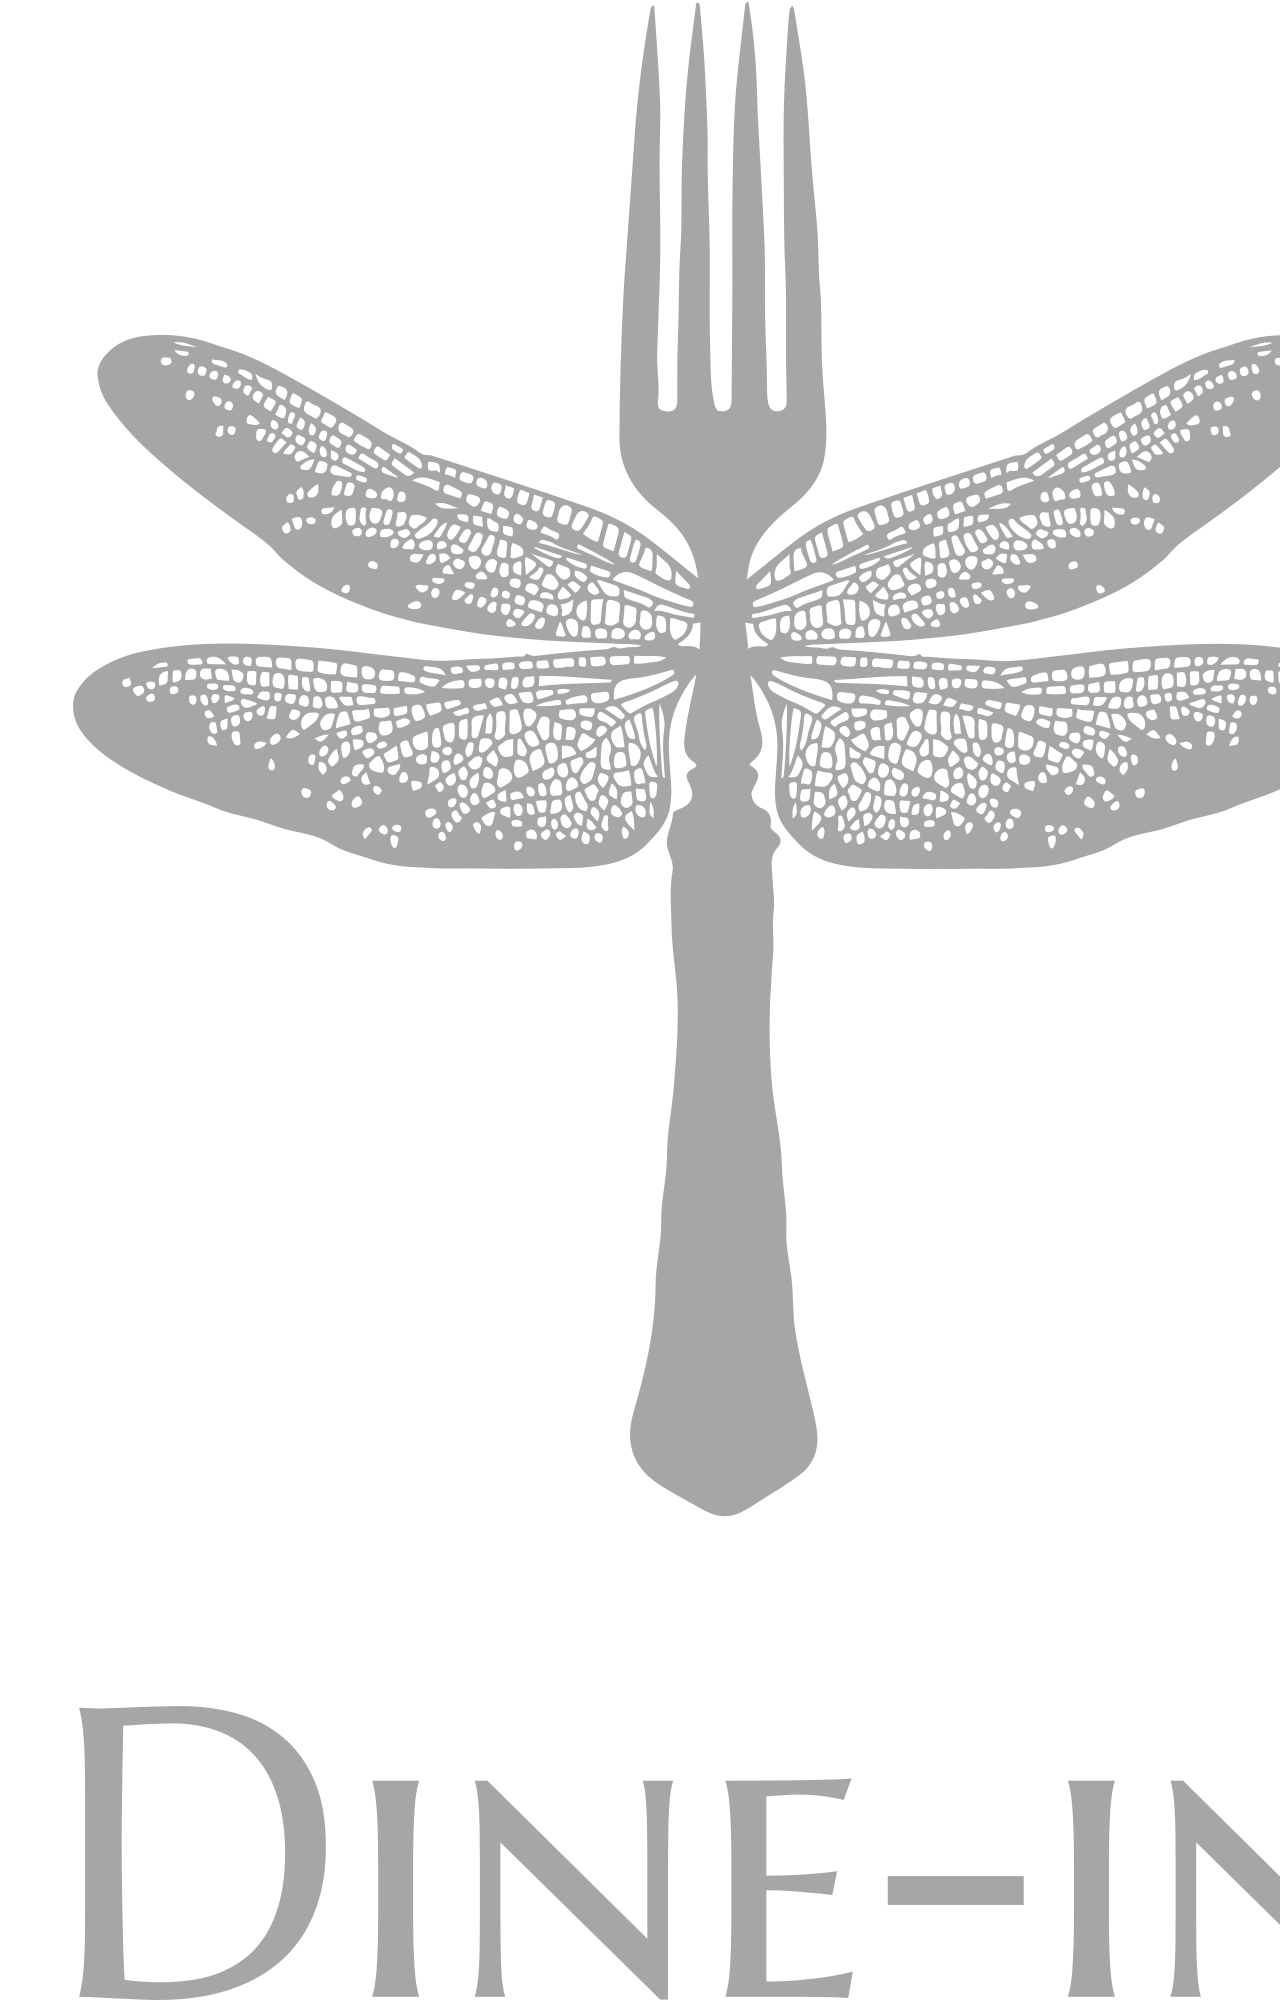 Dine-in's logo